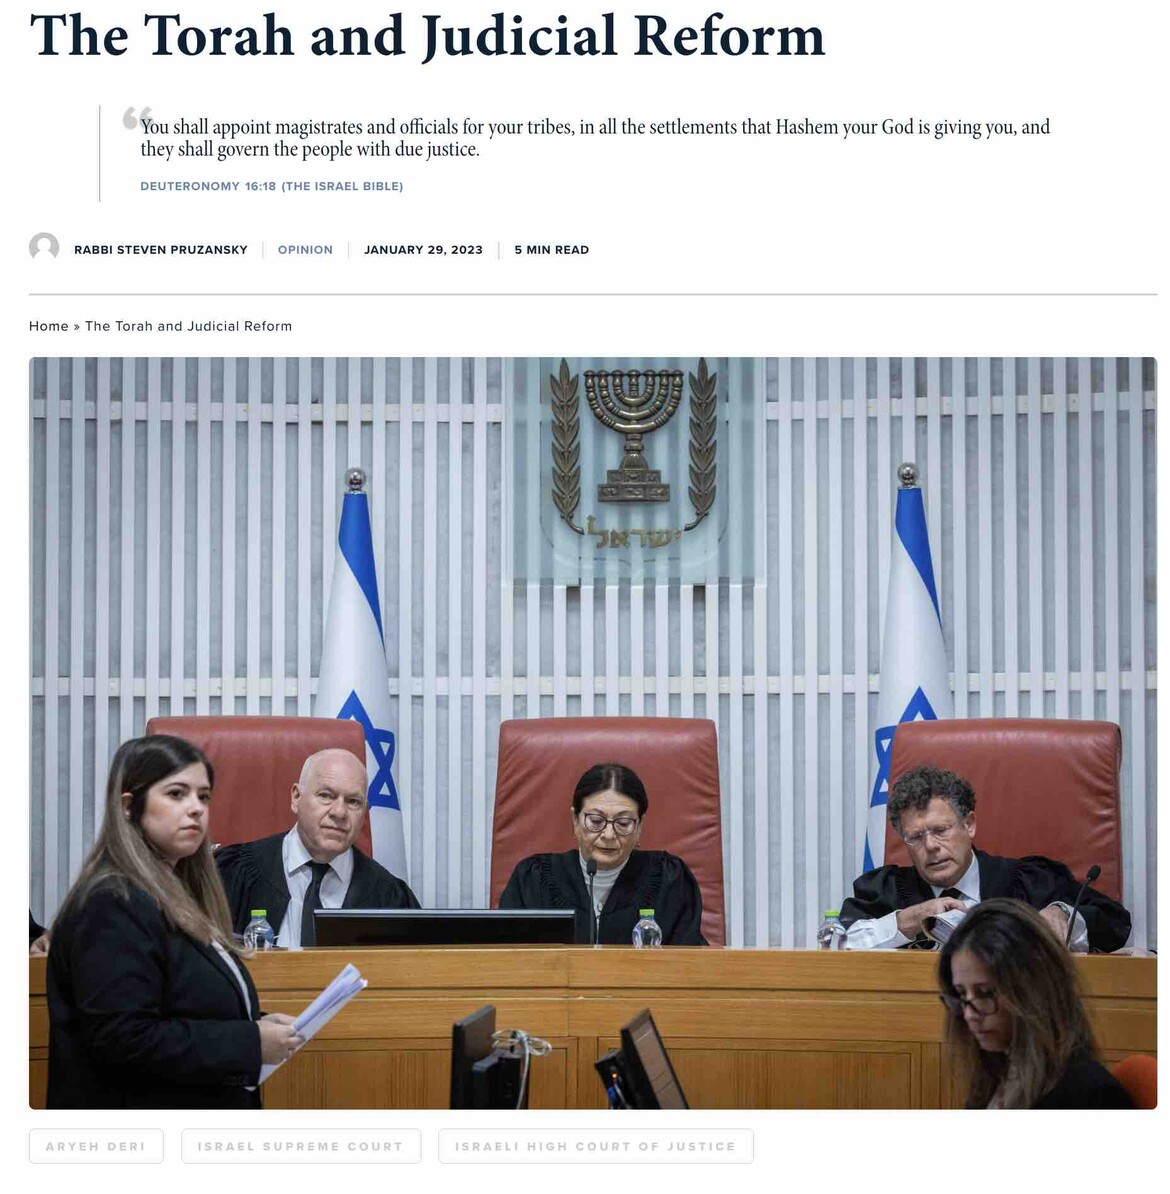 The Torah and Judicial Reform